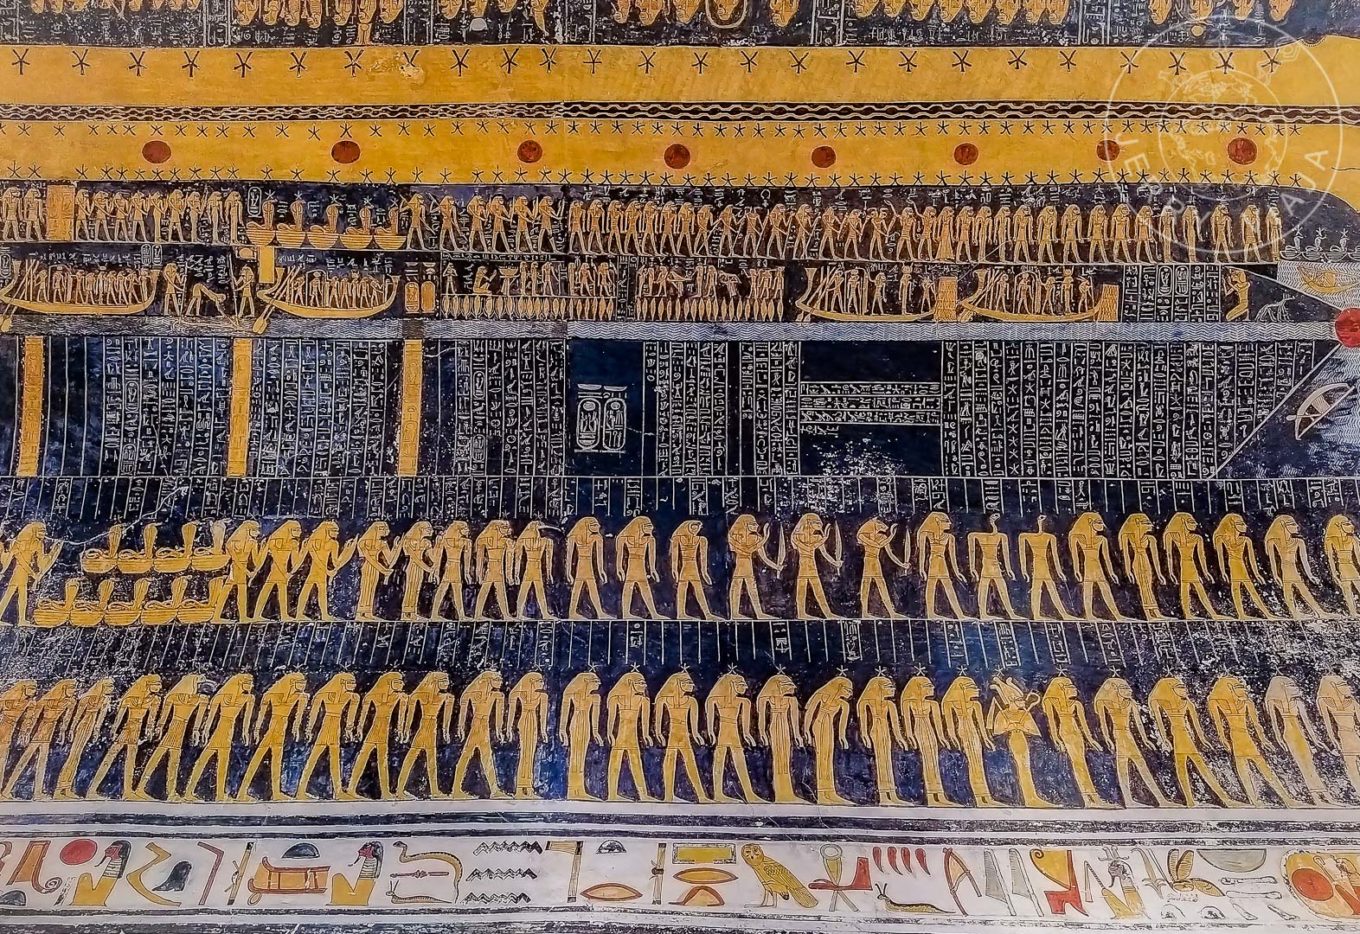 Guía: Qué ver en Luxor (ex Tebas). Tumba de Ramses V y VI o KV9 en el Valle de los Reyes, pintura de la diosa Nut en el techo